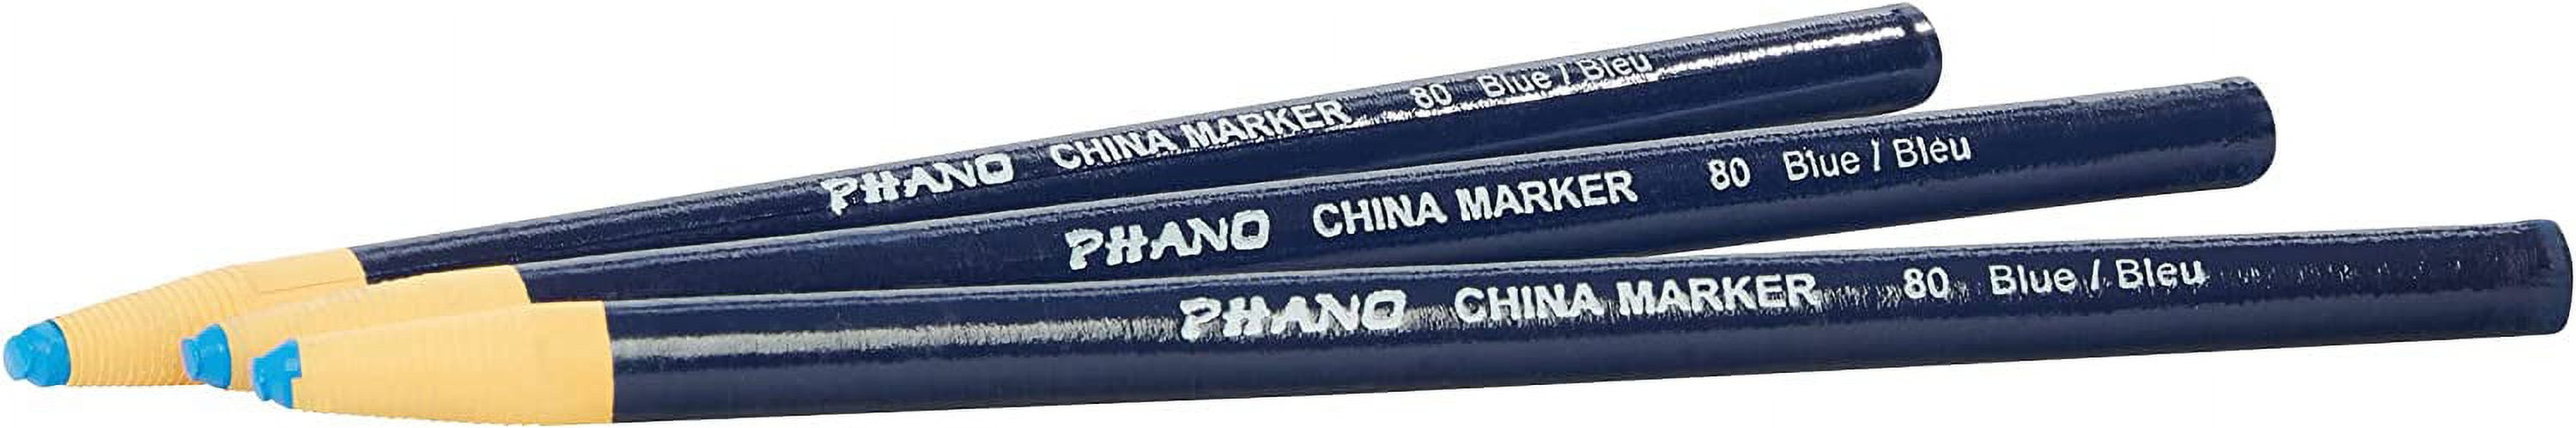 Dixon Phano China Marker, Red, 12PK DIX00079